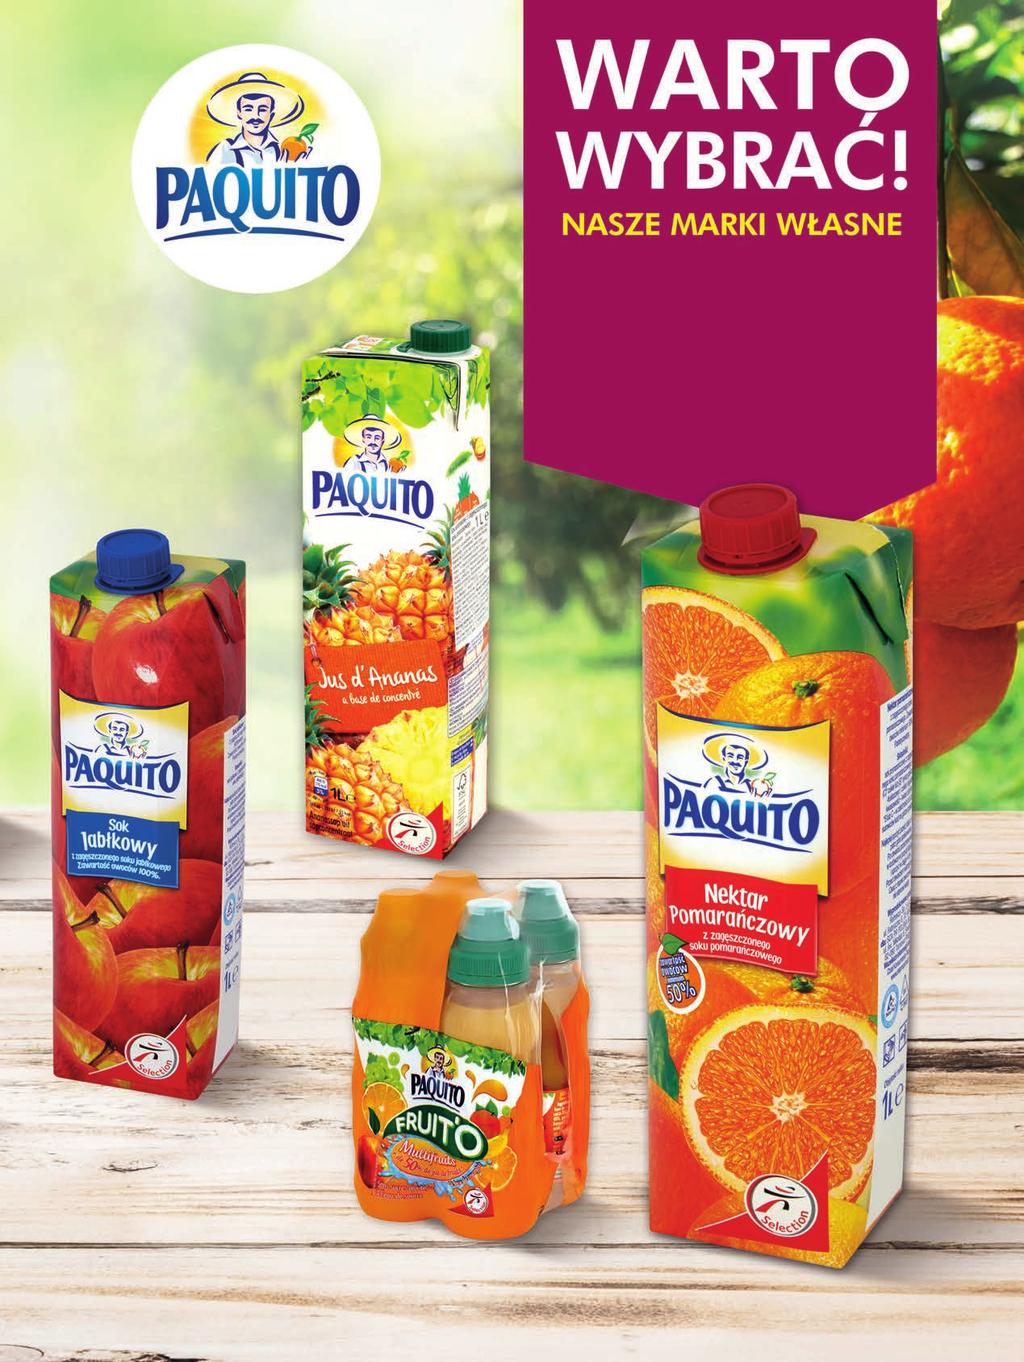 Sok Paquito l 3, 2% 3 49 2, 2 49 6% Nektar Paquito pomarańczowy l Sok jabłkowy Paquito l 2,